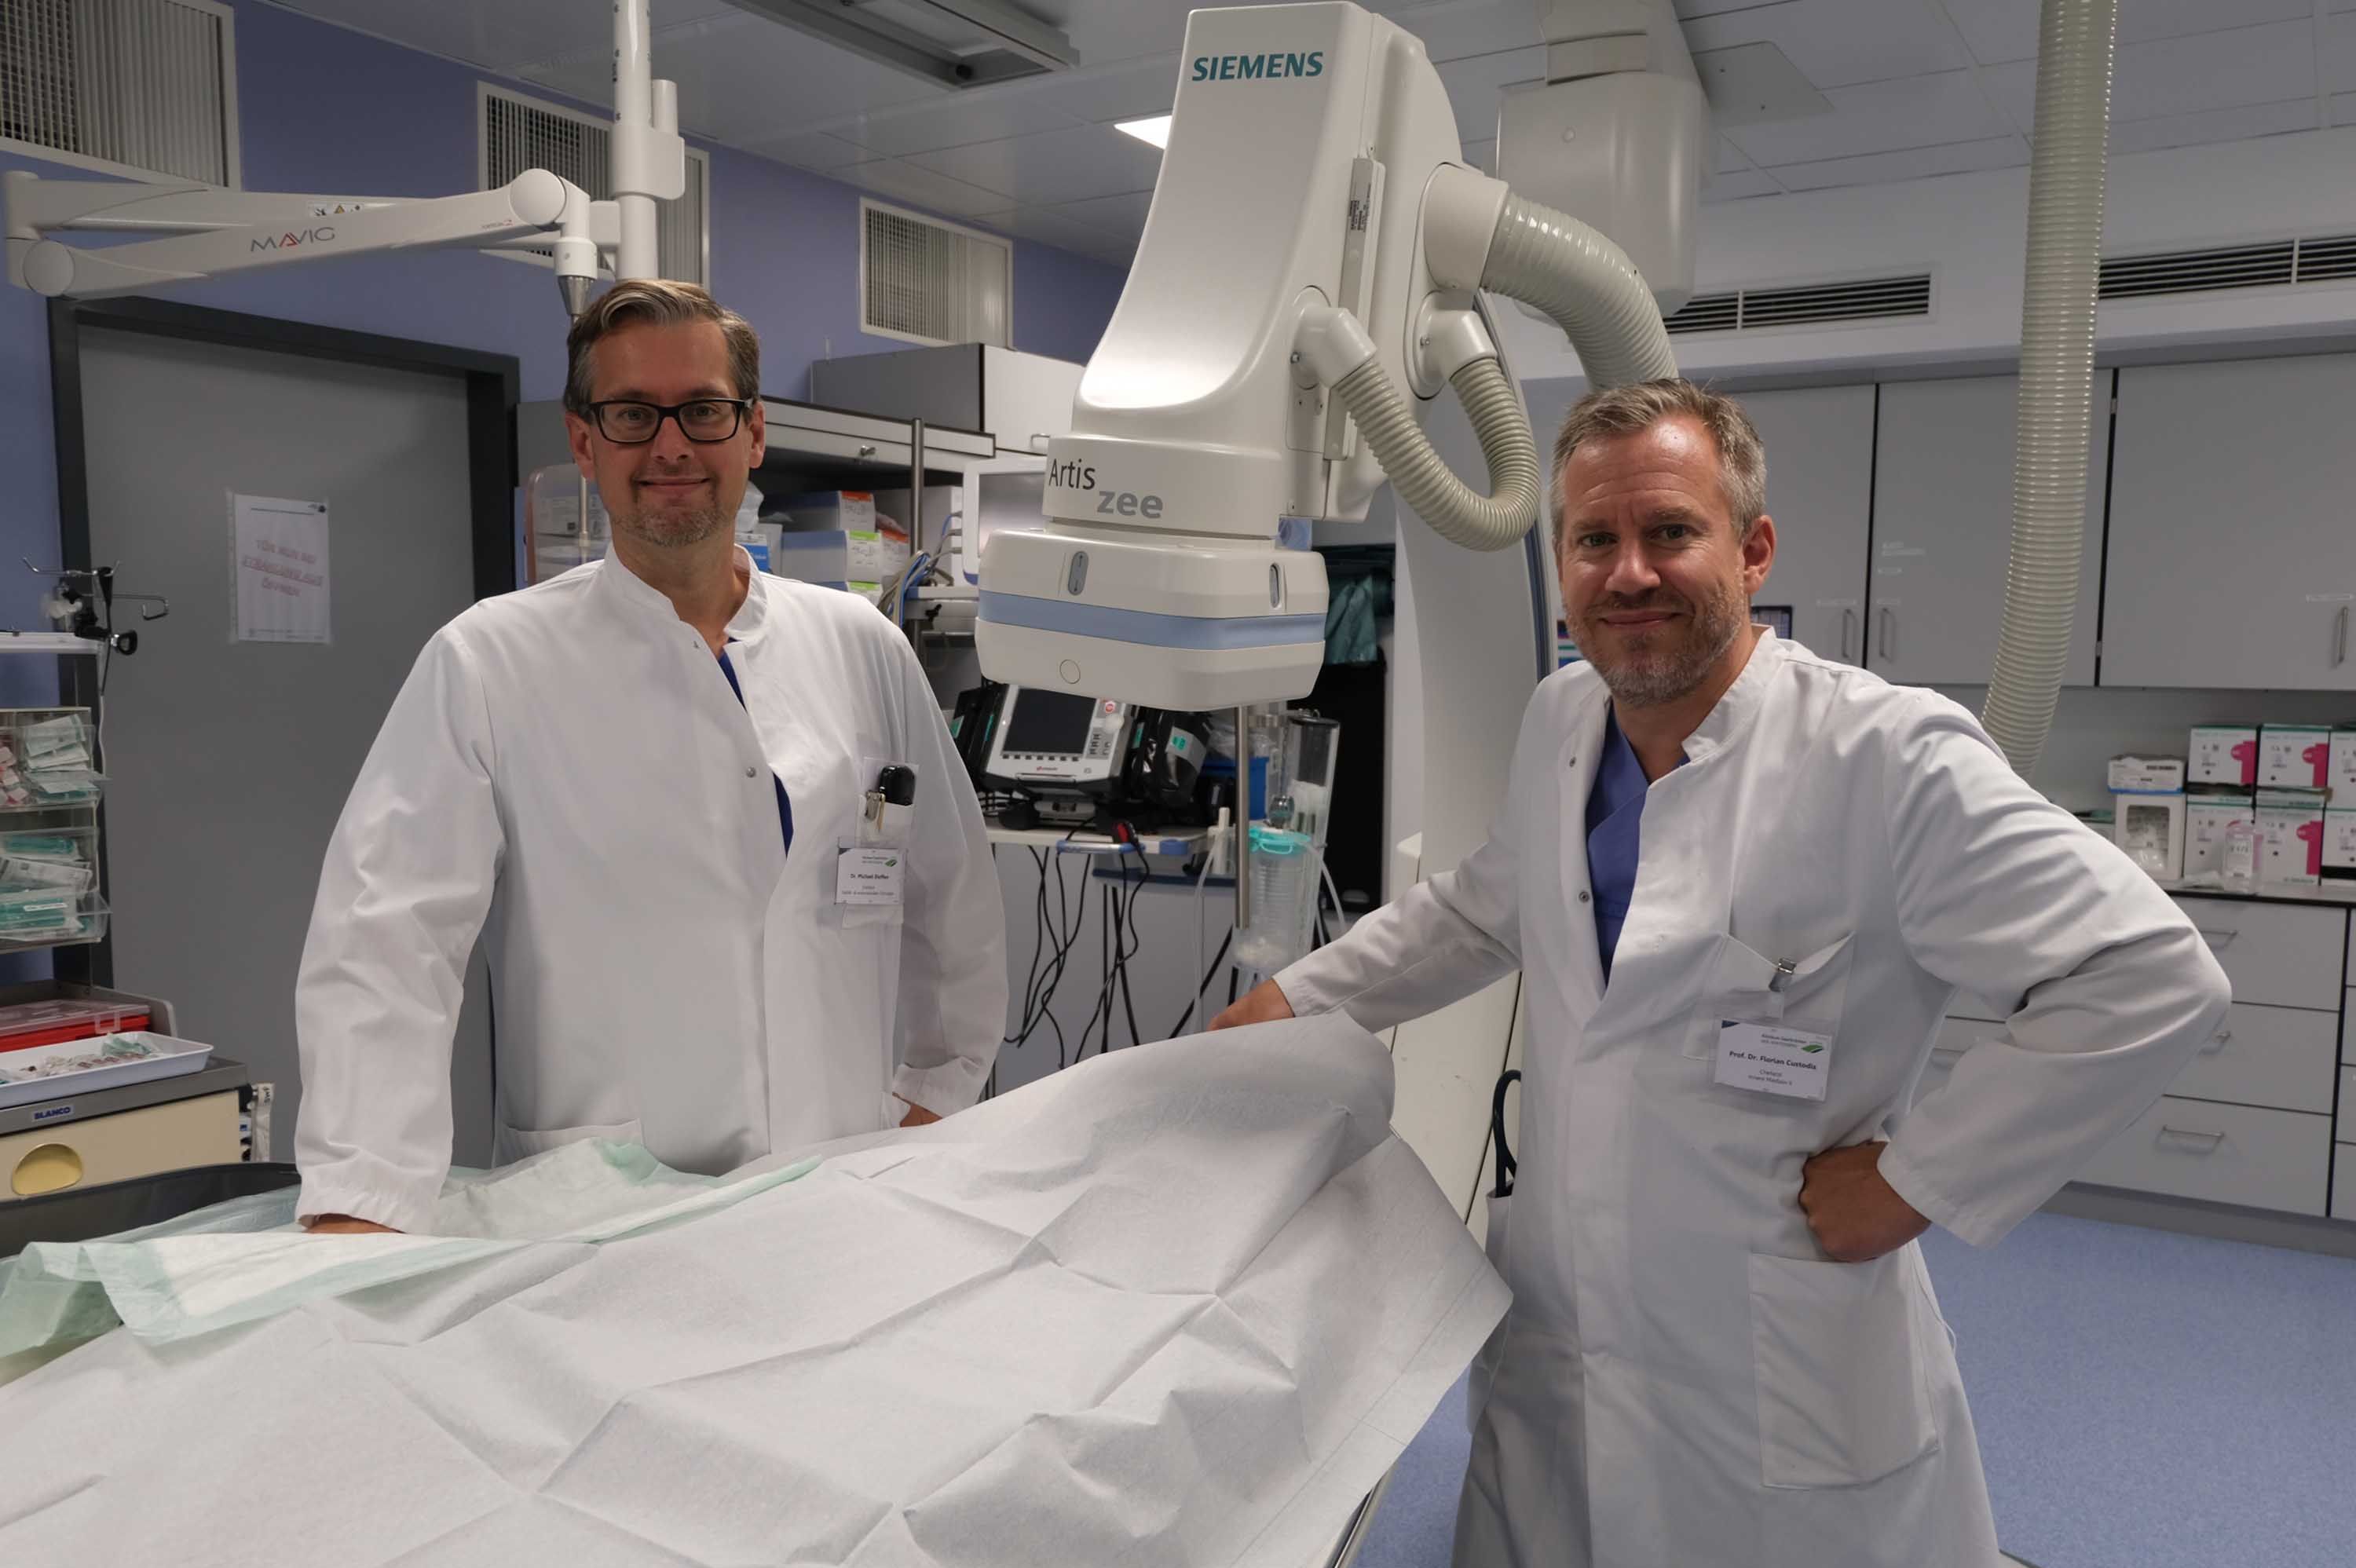 Dr. Steffen und Dr. Custodis stehen in einem Raum, in dem Herzkatheteruntersuchungen durchgeführt werden.